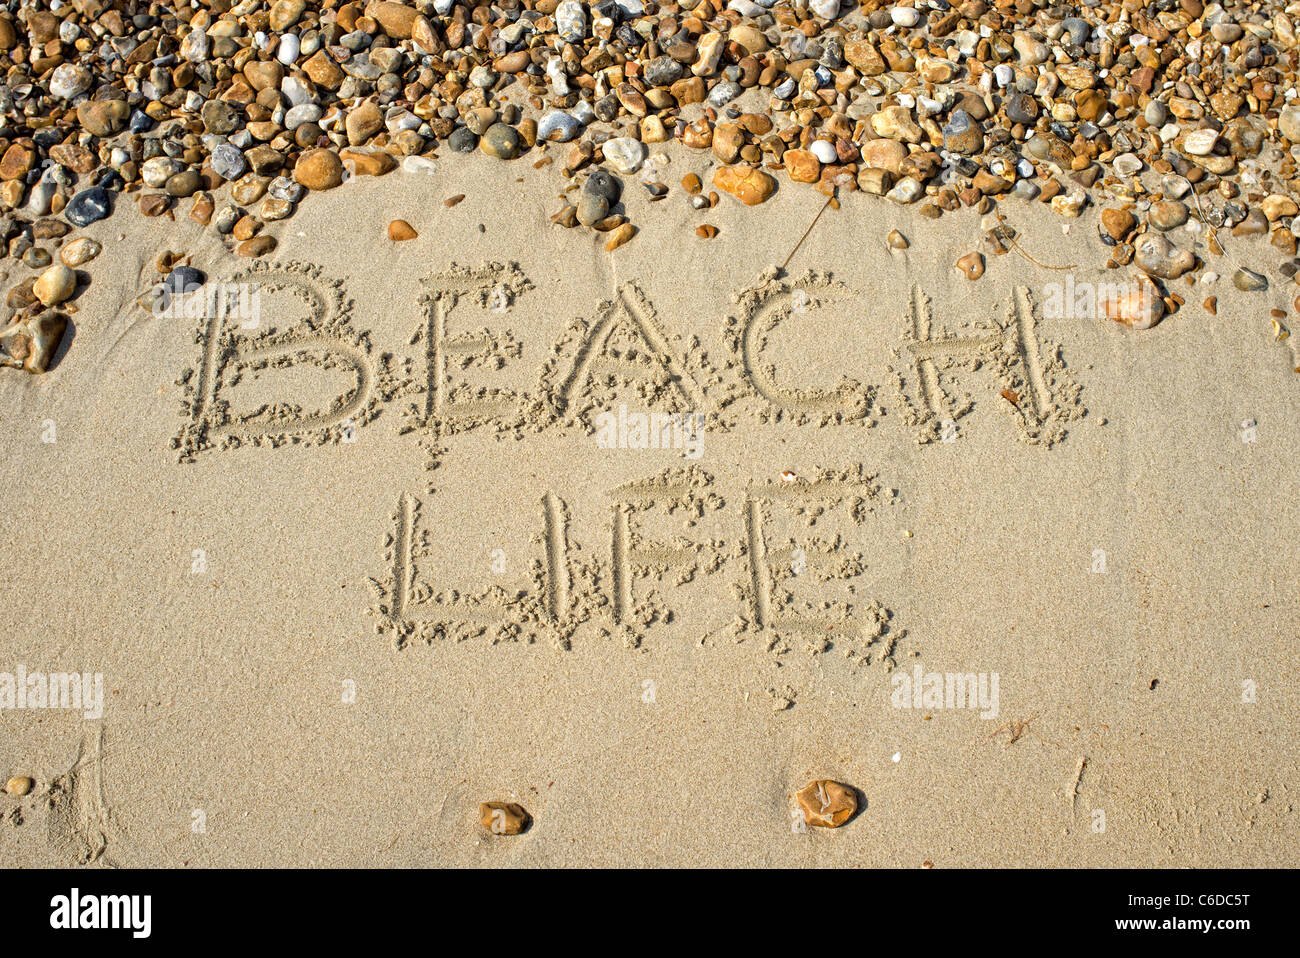 Strandleben in den Sand geschrieben Stockfoto